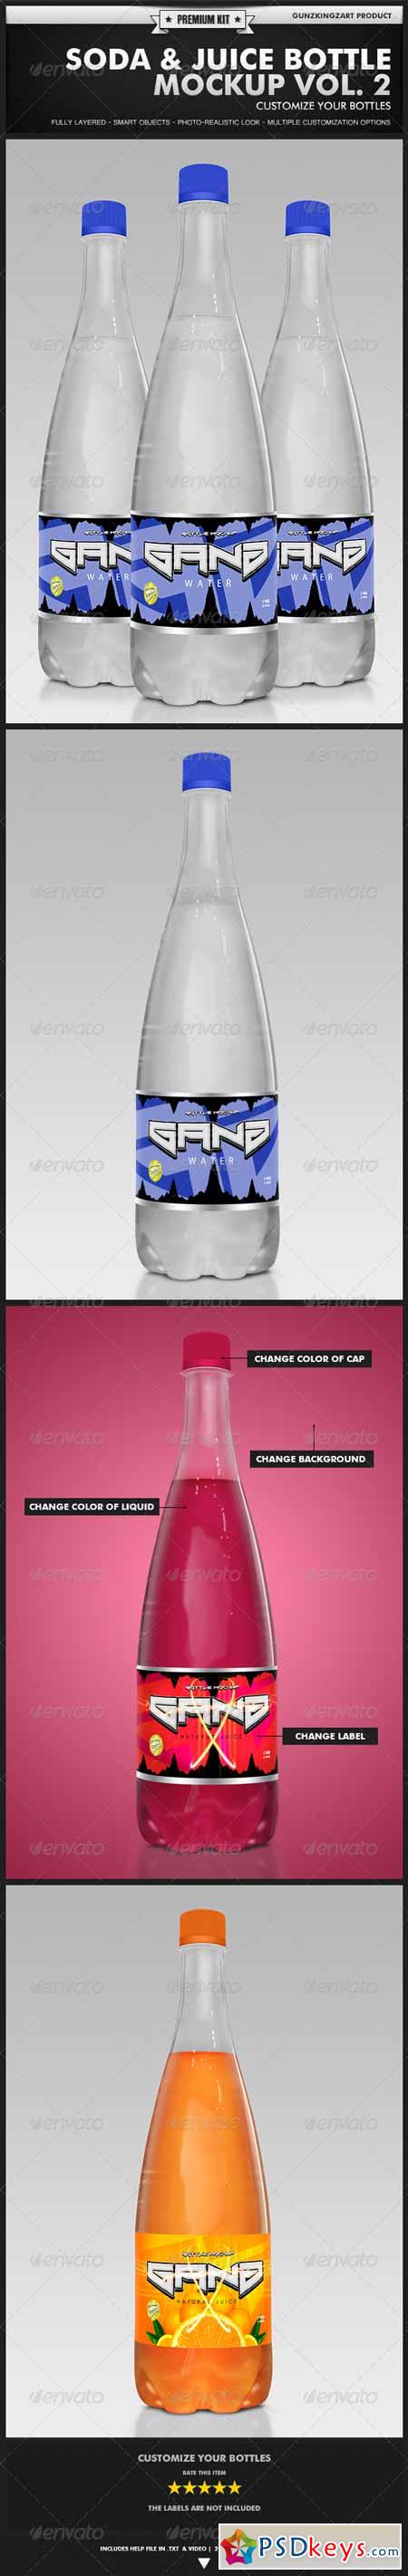 Soda & Juice Bottle Mockup Vol. 2 - Premium Kit 4734219